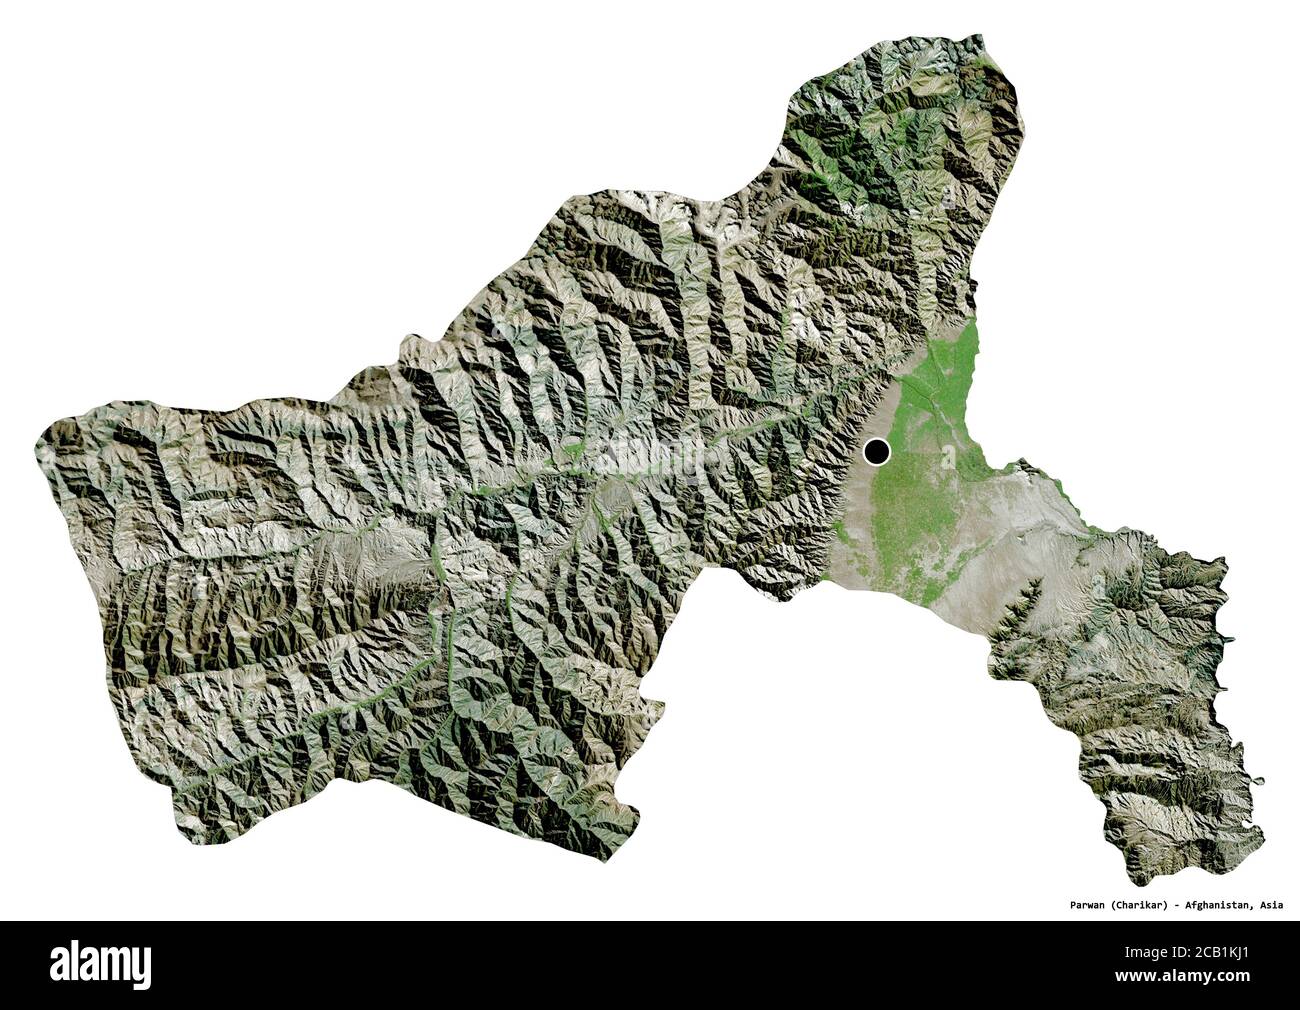 Forma di Parwan, provincia dell'Afghanistan, con la sua capitale isolata su sfondo bianco. Immagini satellitari. Rendering 3D Foto Stock